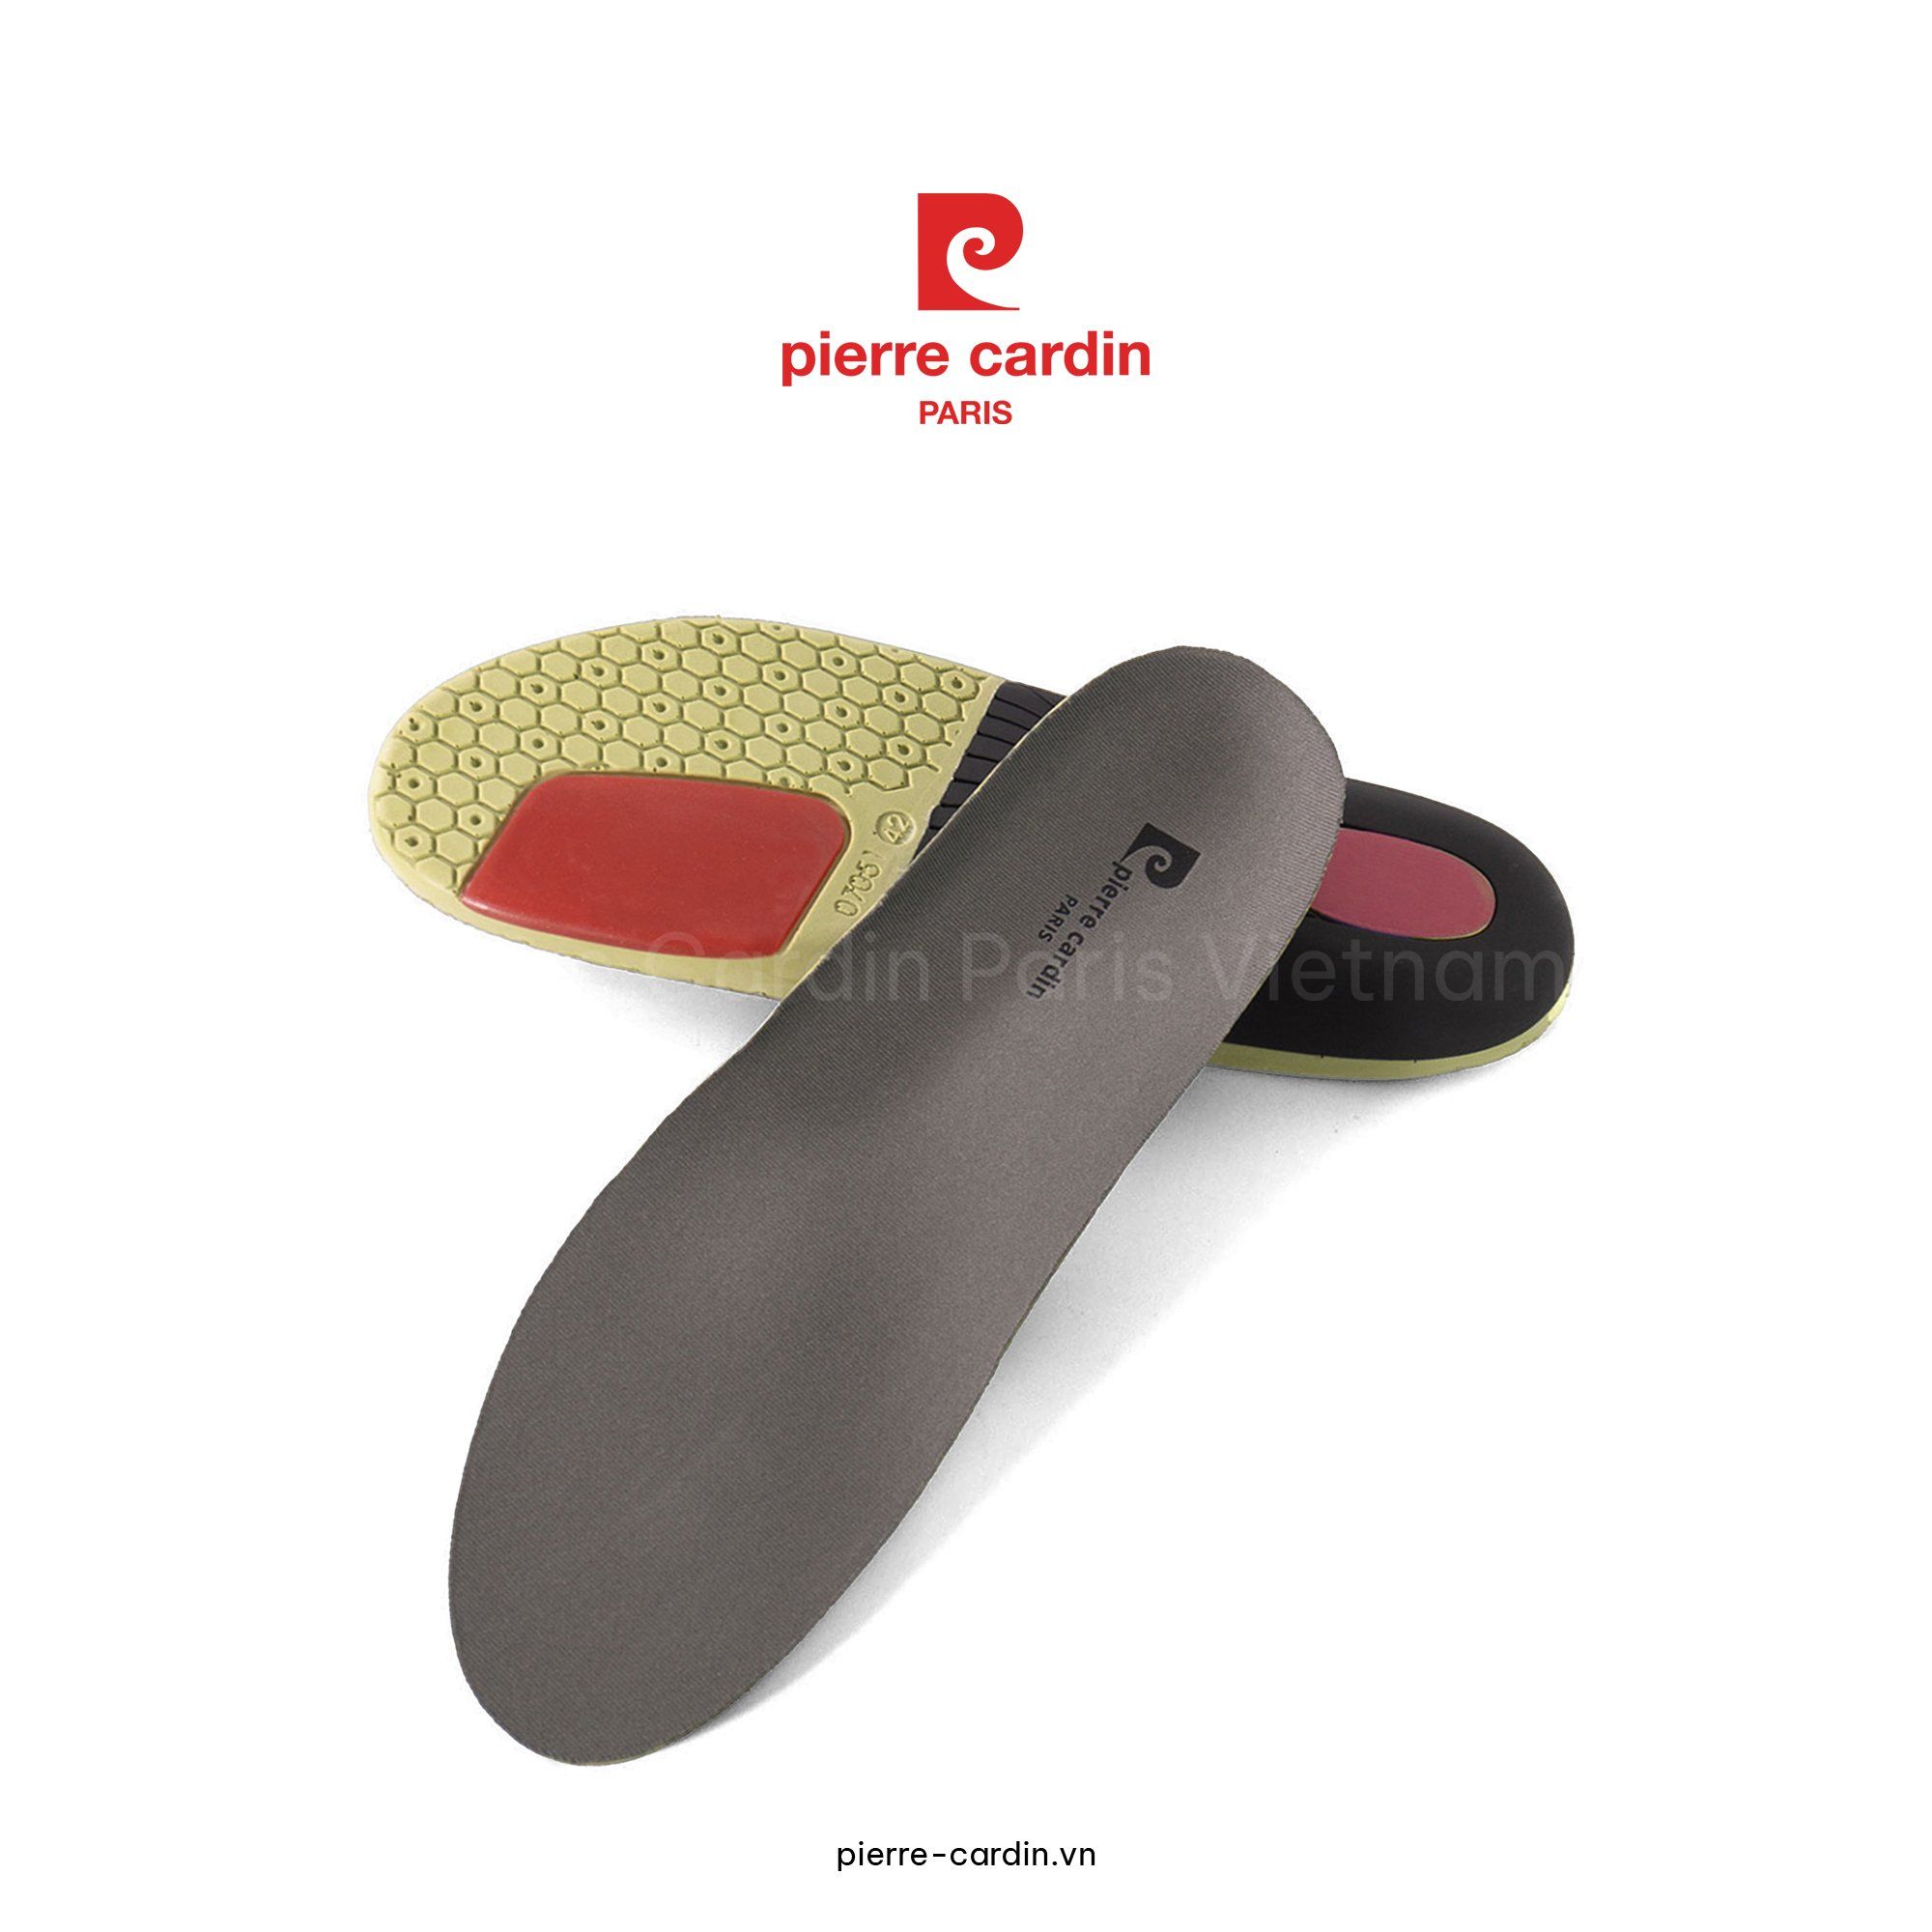 Pierre Cardin Paris Vietnam: [FEATHER STEP] Lót Giày Sức Khỏe Cao Cấp Pierre Cardin - PCAISSH001GRY (Sải Bước Nhẹ Nhàng)